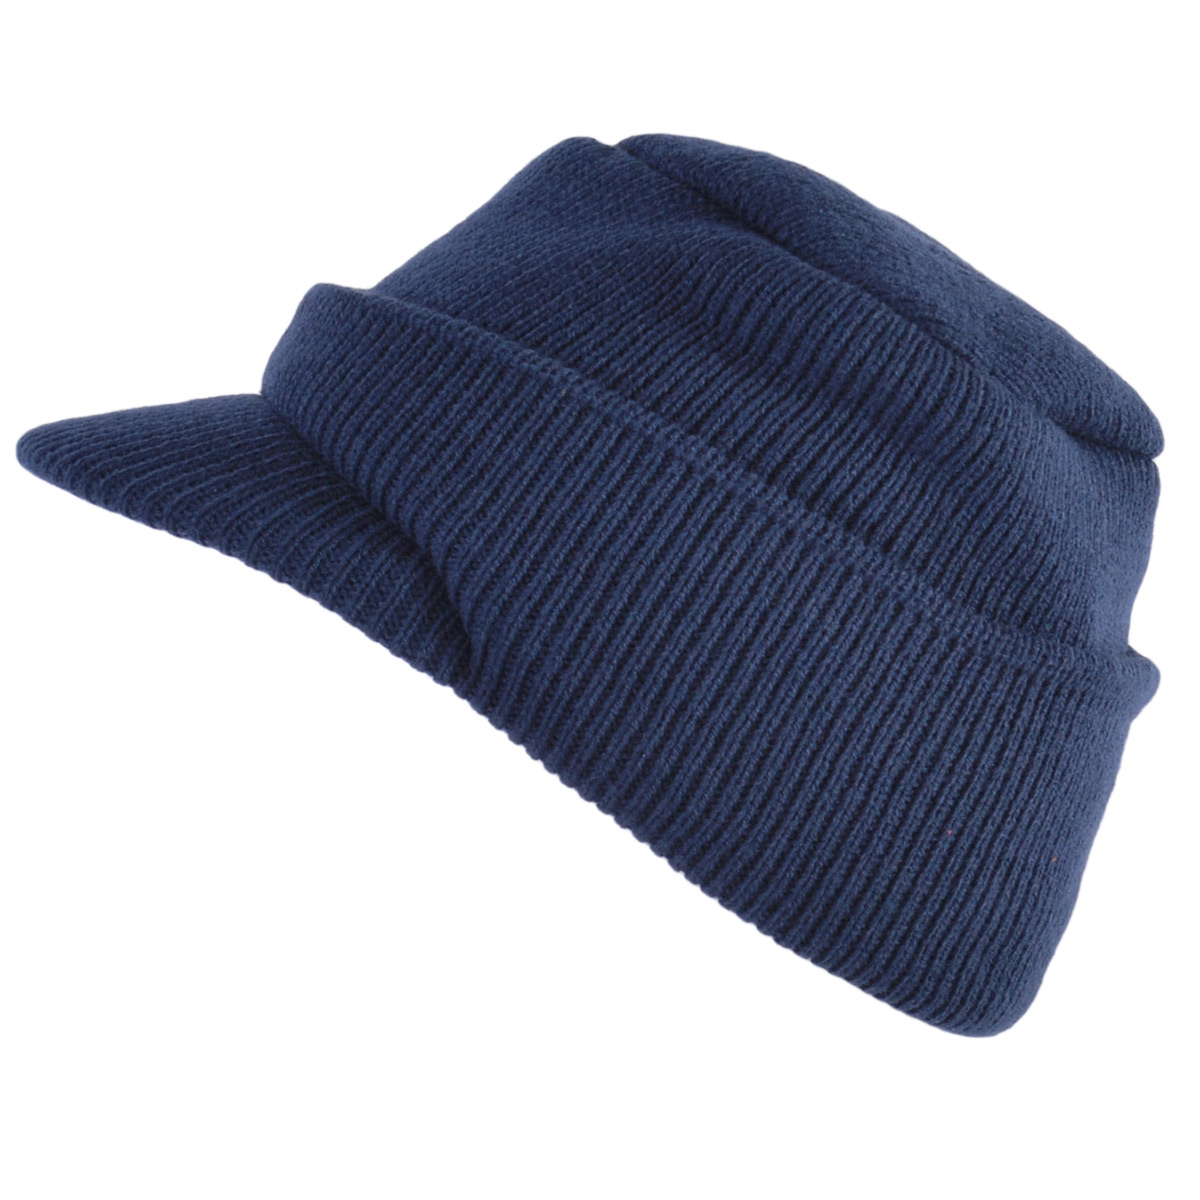 つば付きニット帽 つば付ニット帽 帽子 ニット帽 メンズ レディース 秋冬 冬用 防寒 | オスロー ニットキャップ